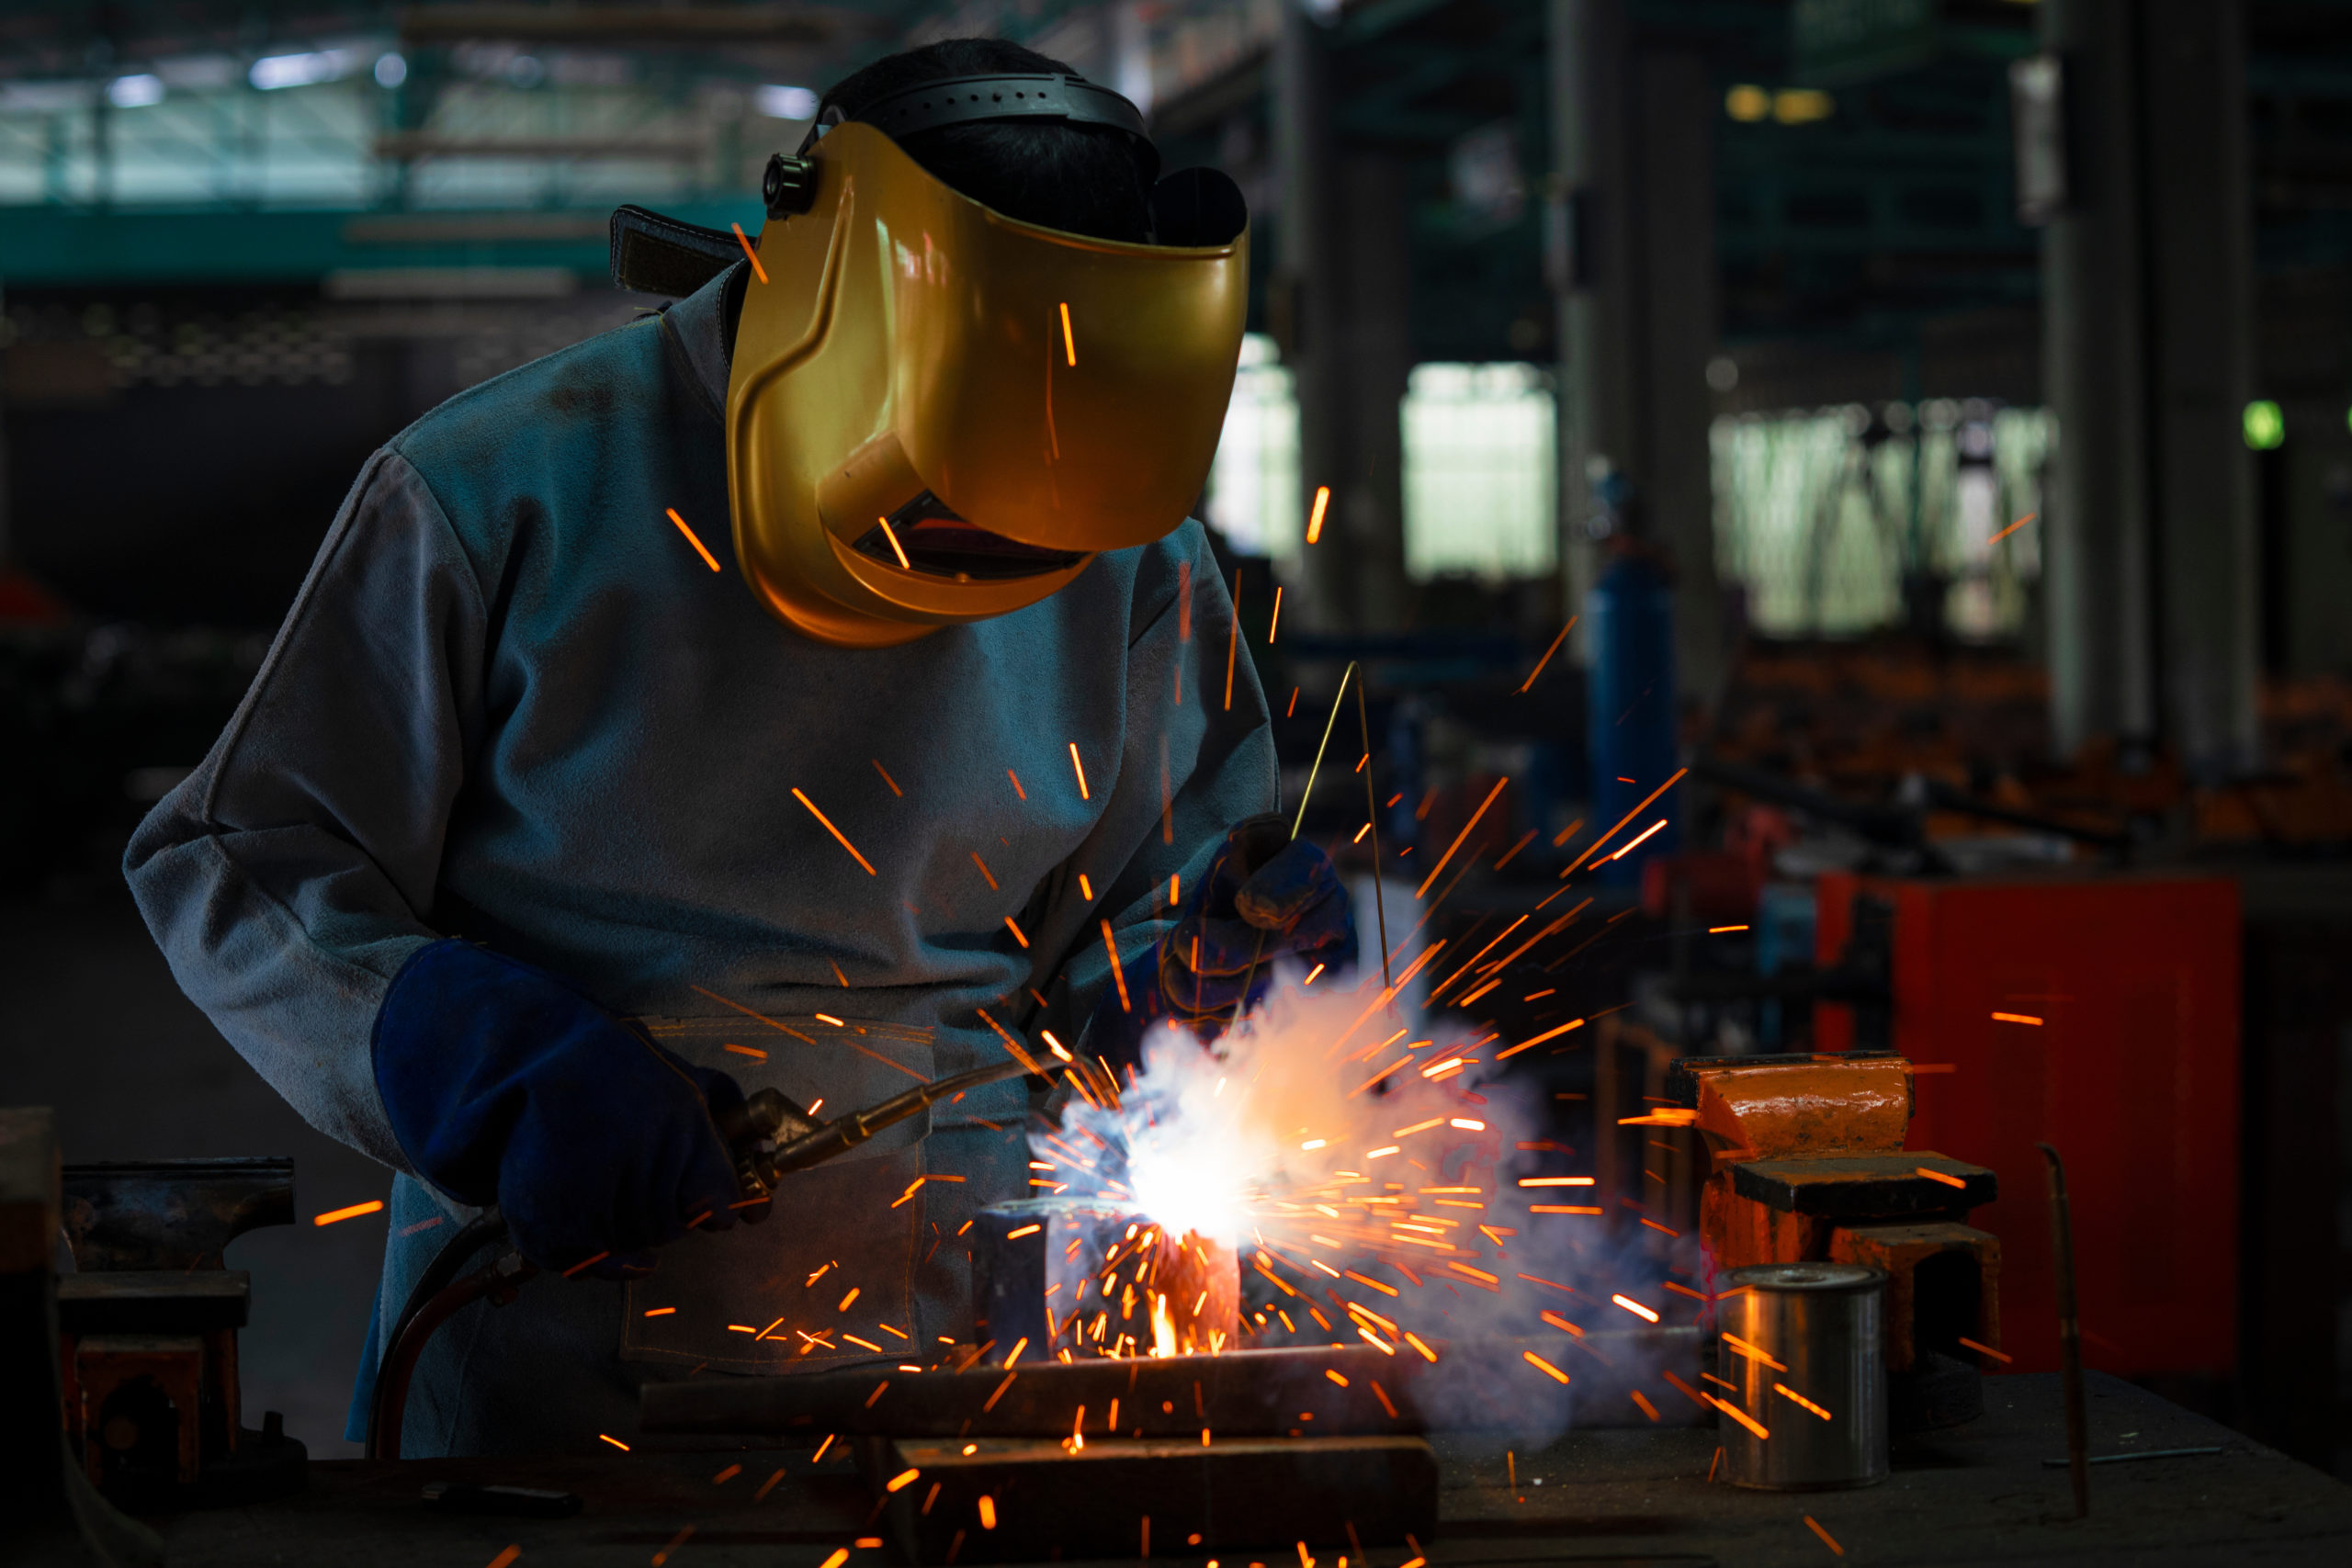 Industrial welder is welding metal part in the factory